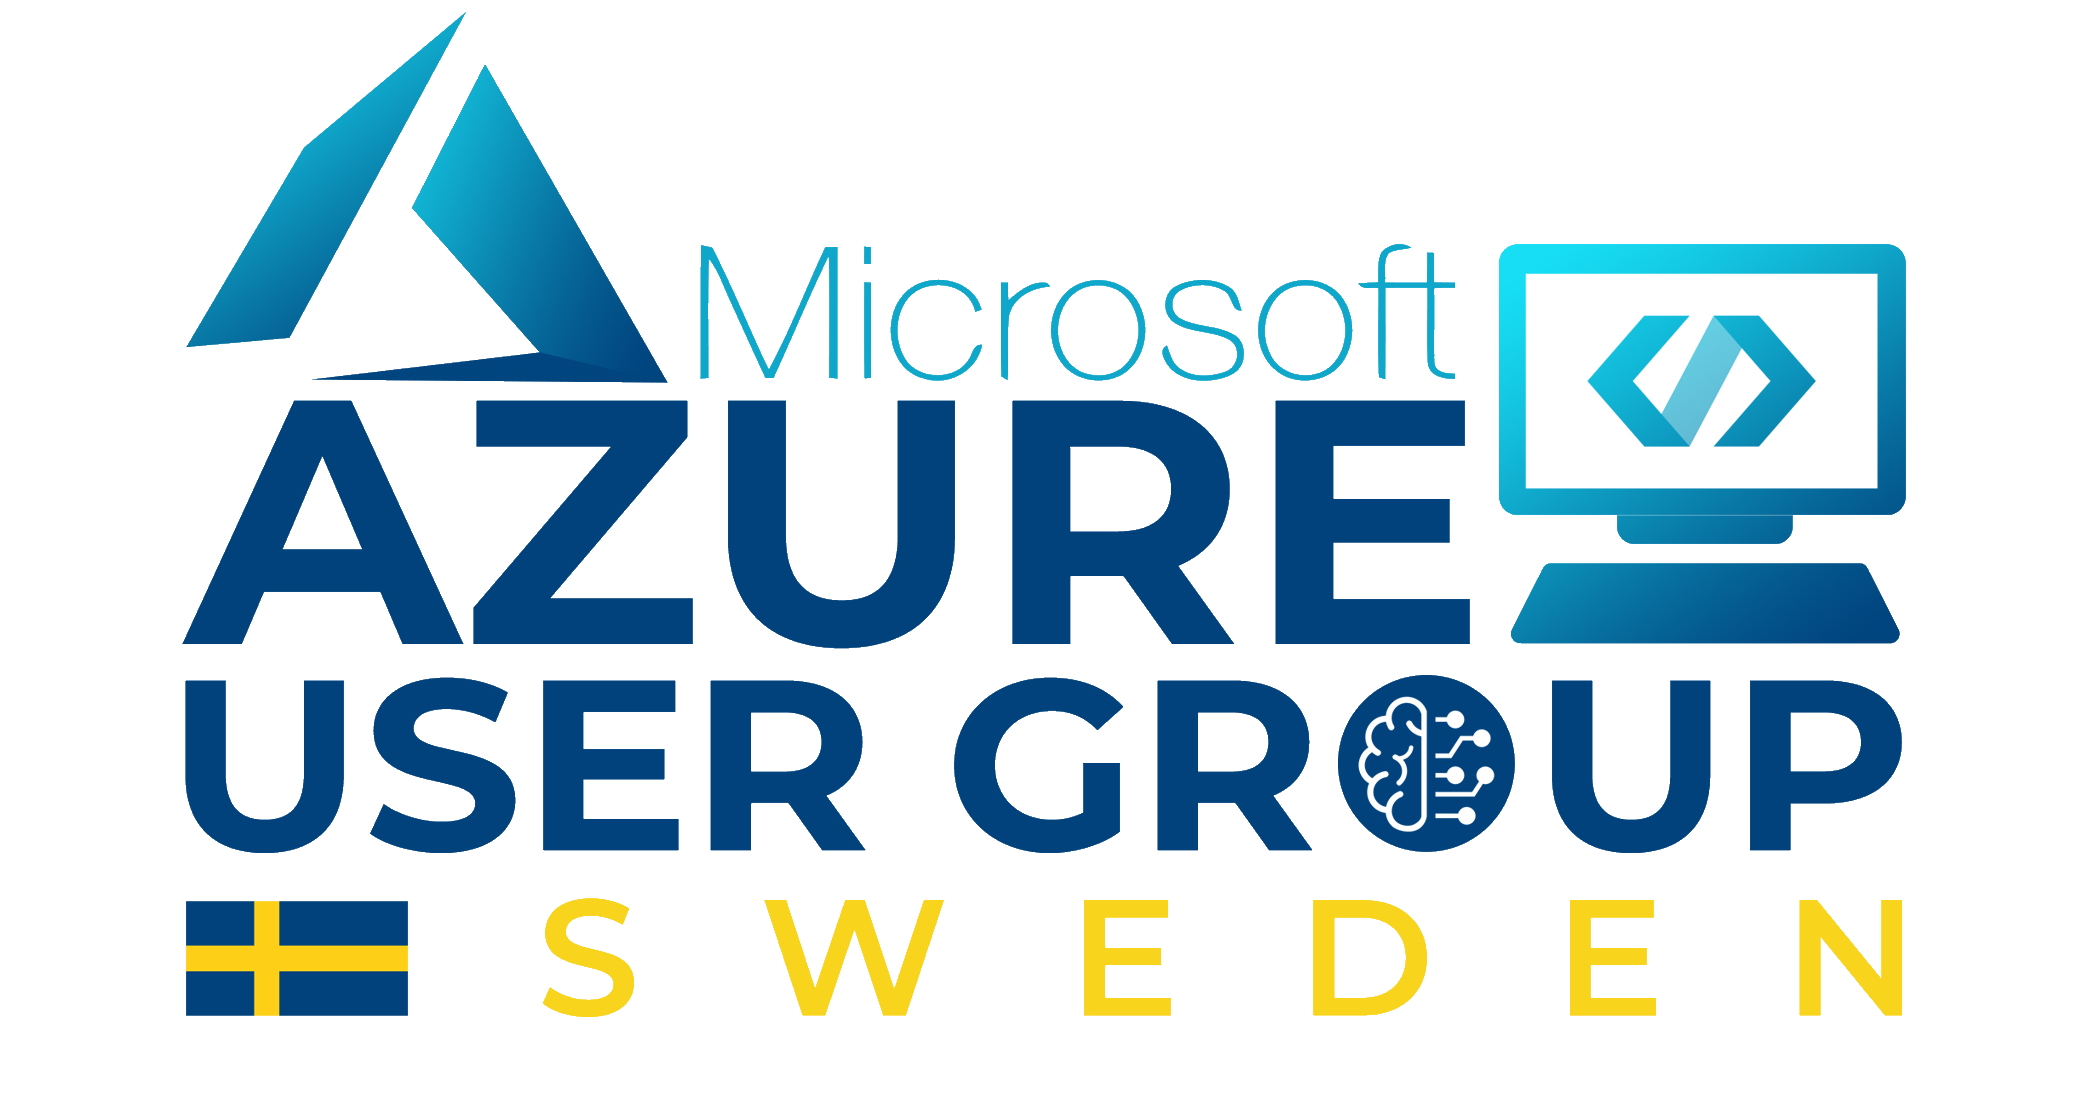 Azure User Group Sweden